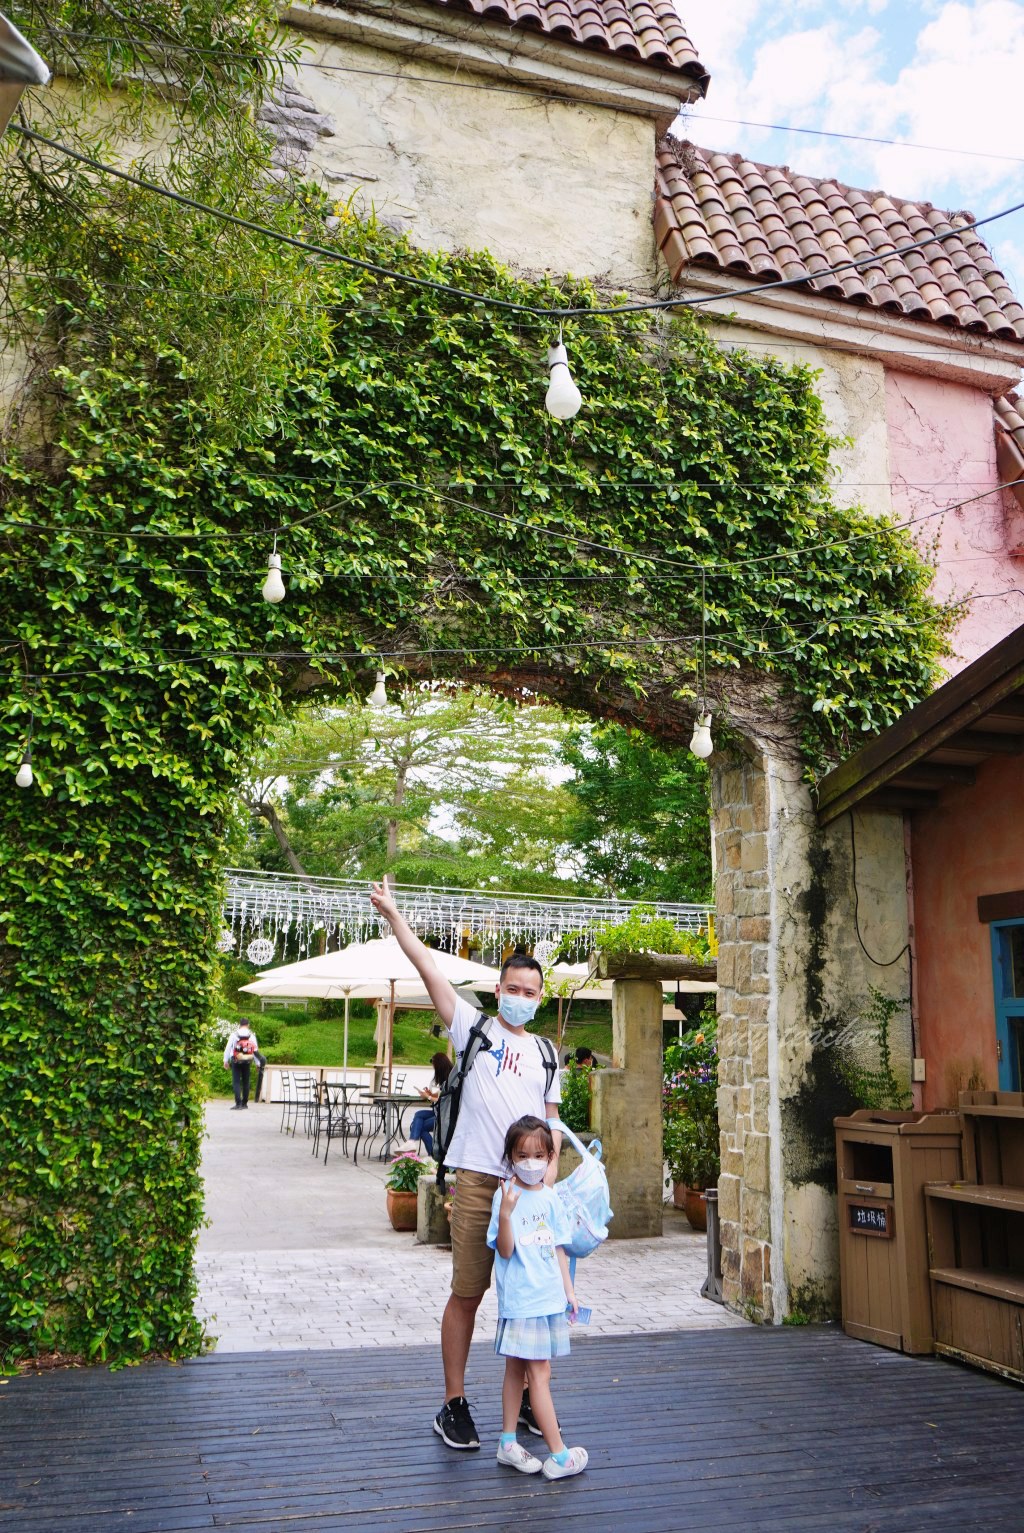 心之芳庭繡球花-超美的南法莊園還有許願池讓你一秒飛歐洲